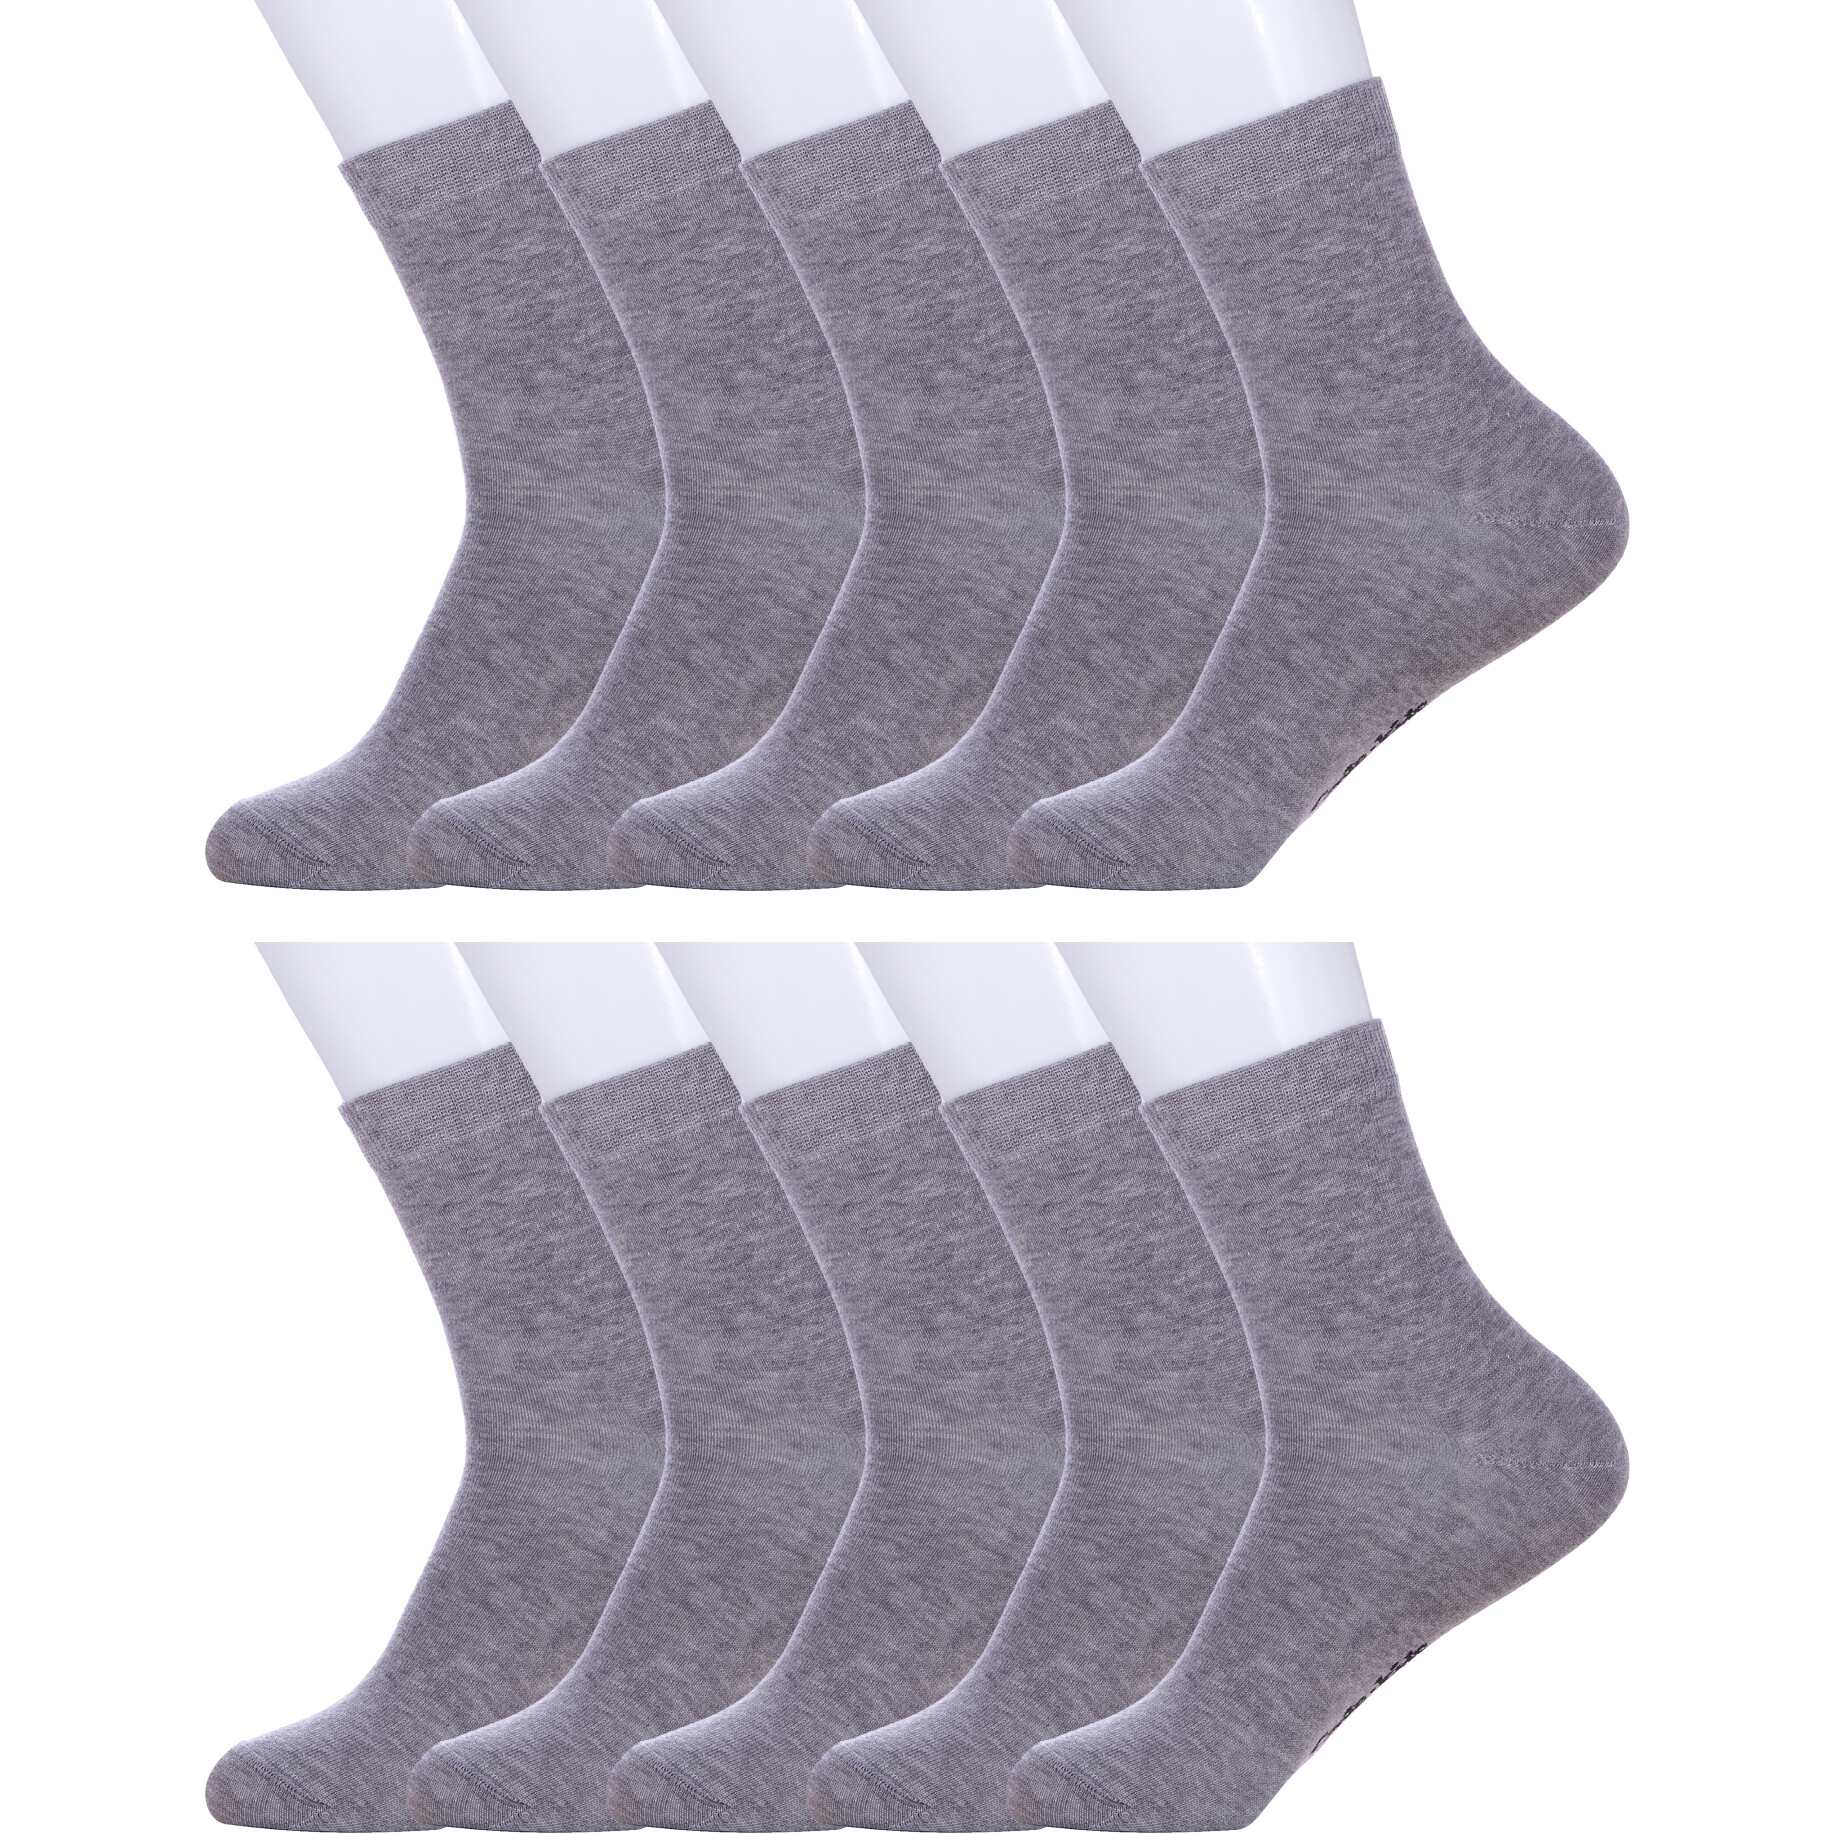 Носки детские NOSMAG 10-5С-11СП, рис. 000, серые, 14 носки унисекс серые с рисунком в виде поперечной полоски